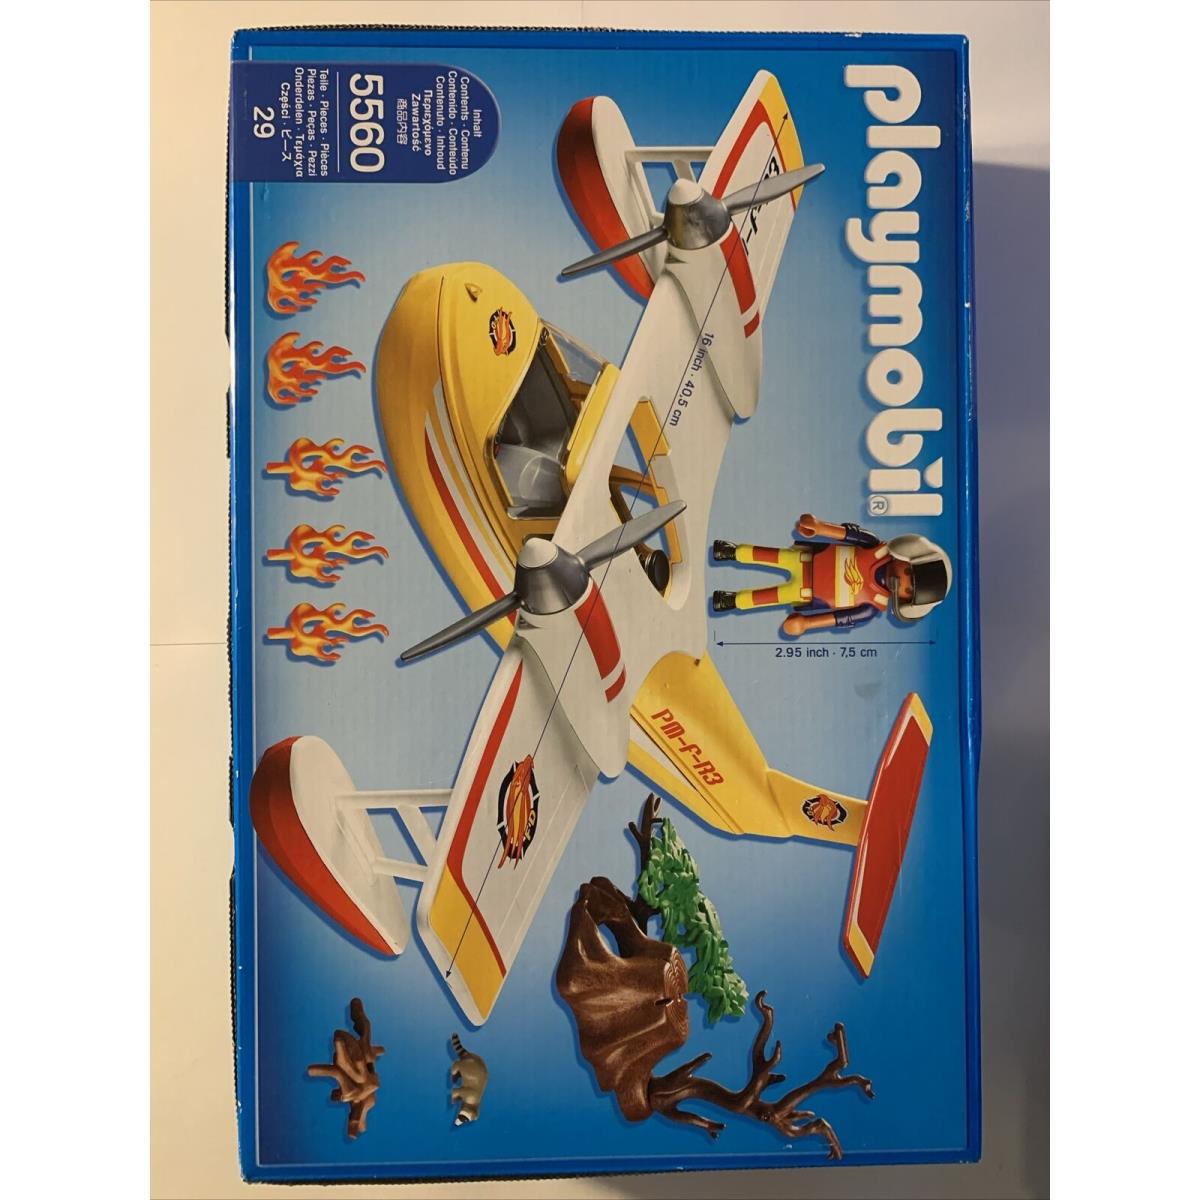 2014 Playmobil Wildlife Firefighting Sea Plane 5560